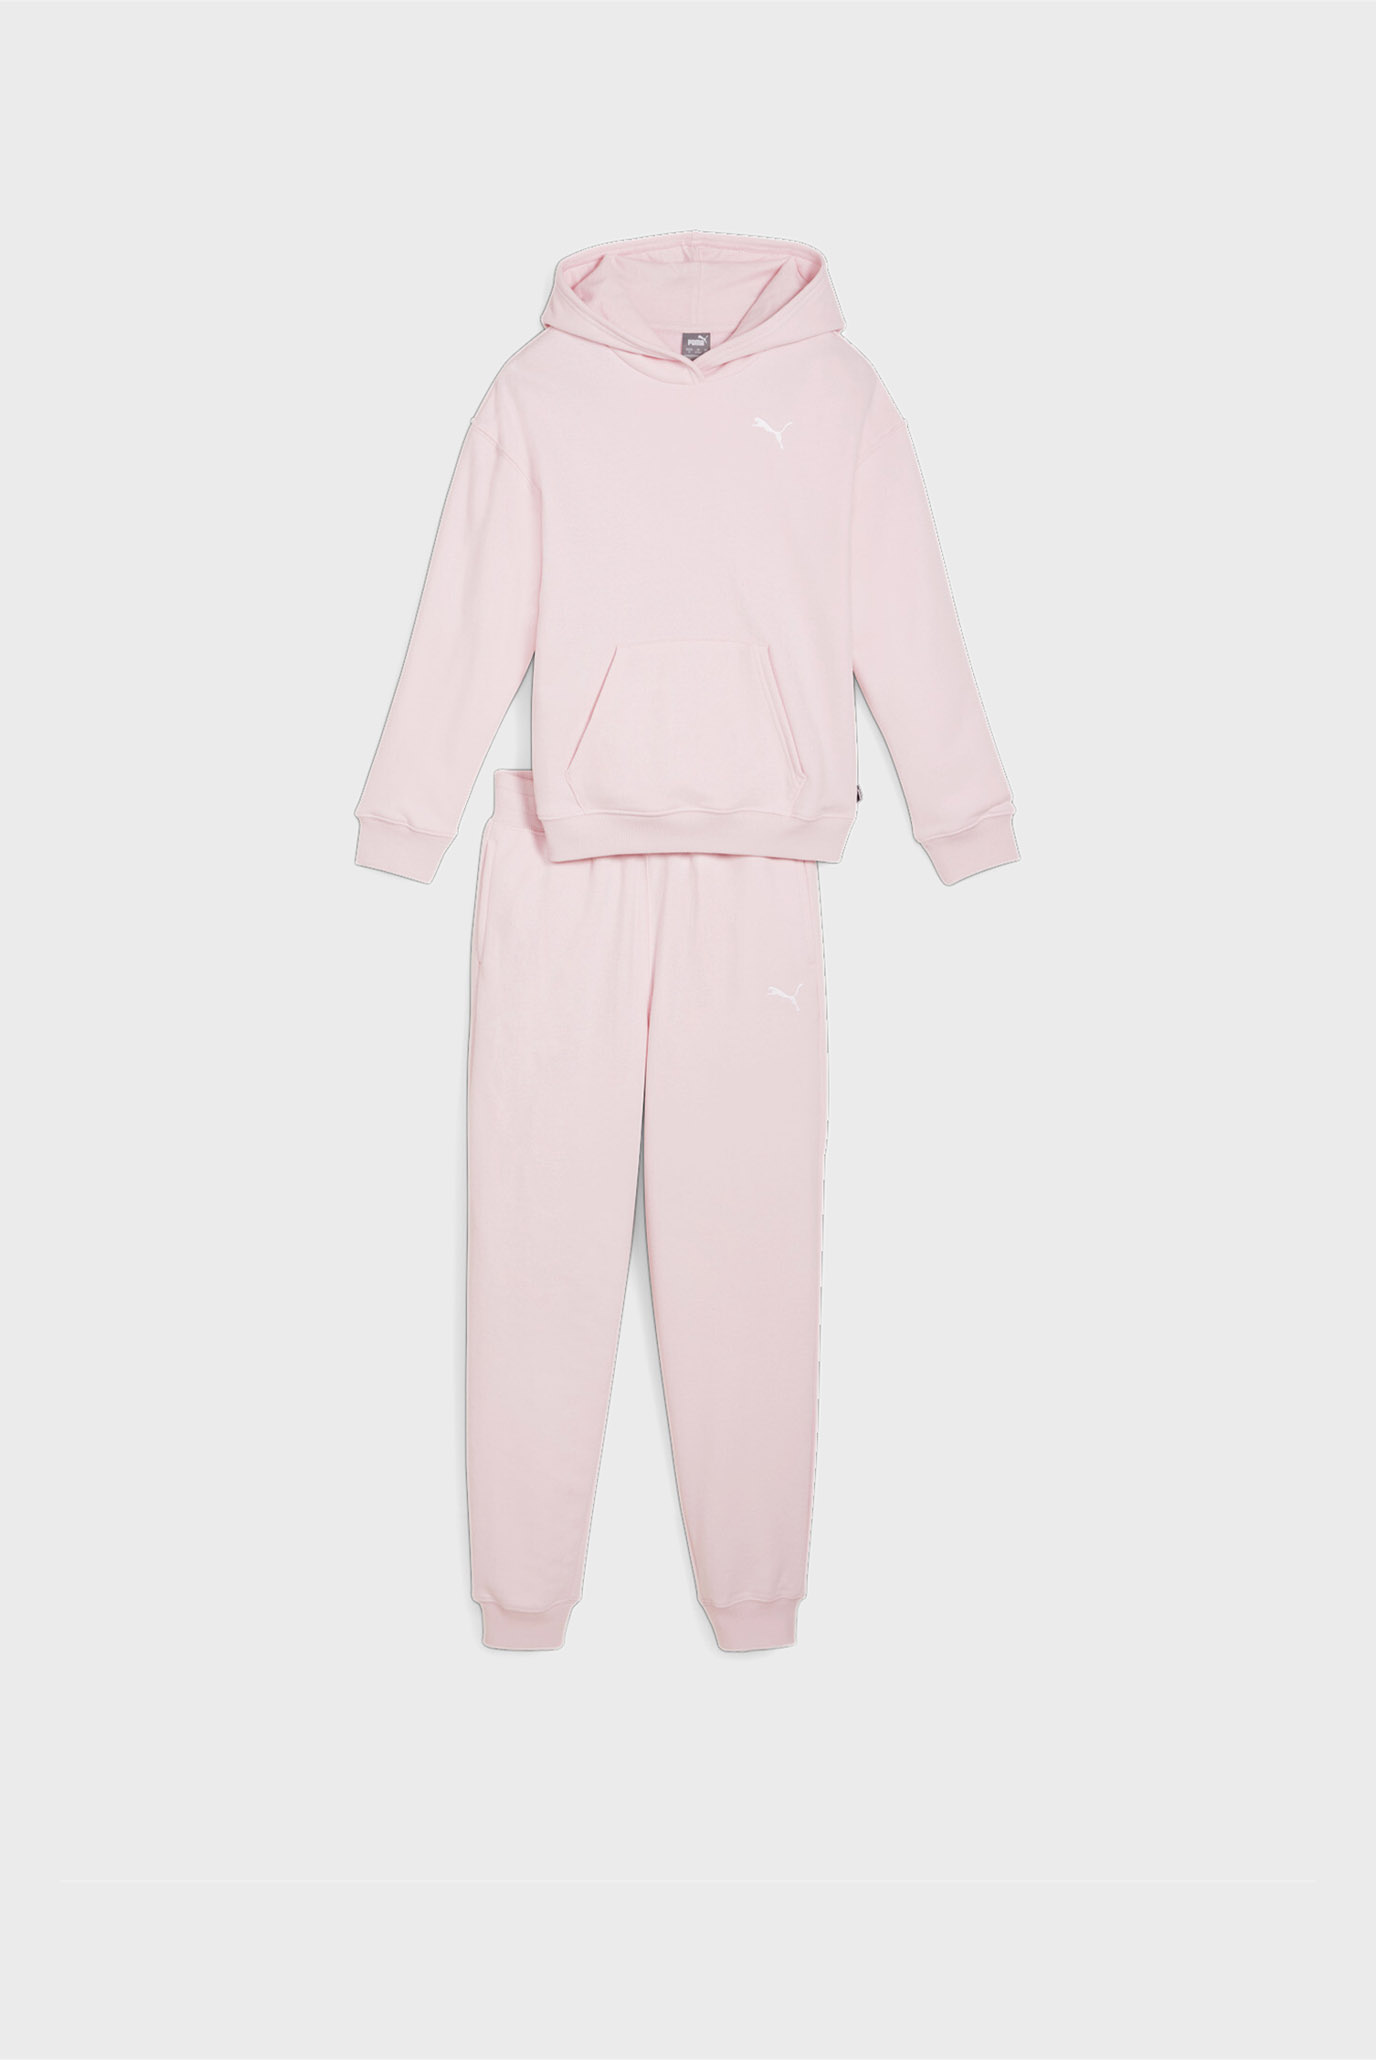 Детский розовый спортивный костюм (худи, брюки) Girls' Loungewear Suit 1